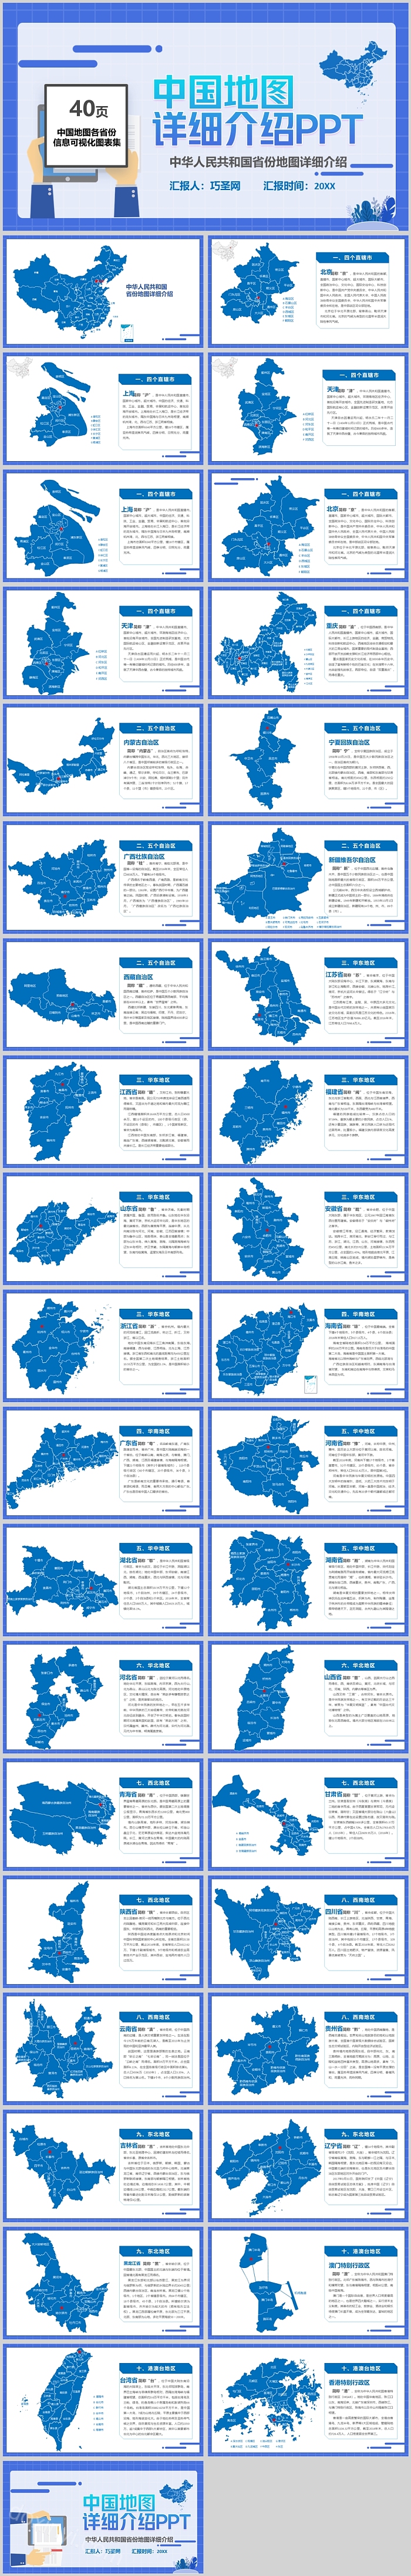 中华人民共和国省份地图详细介绍PPT模板